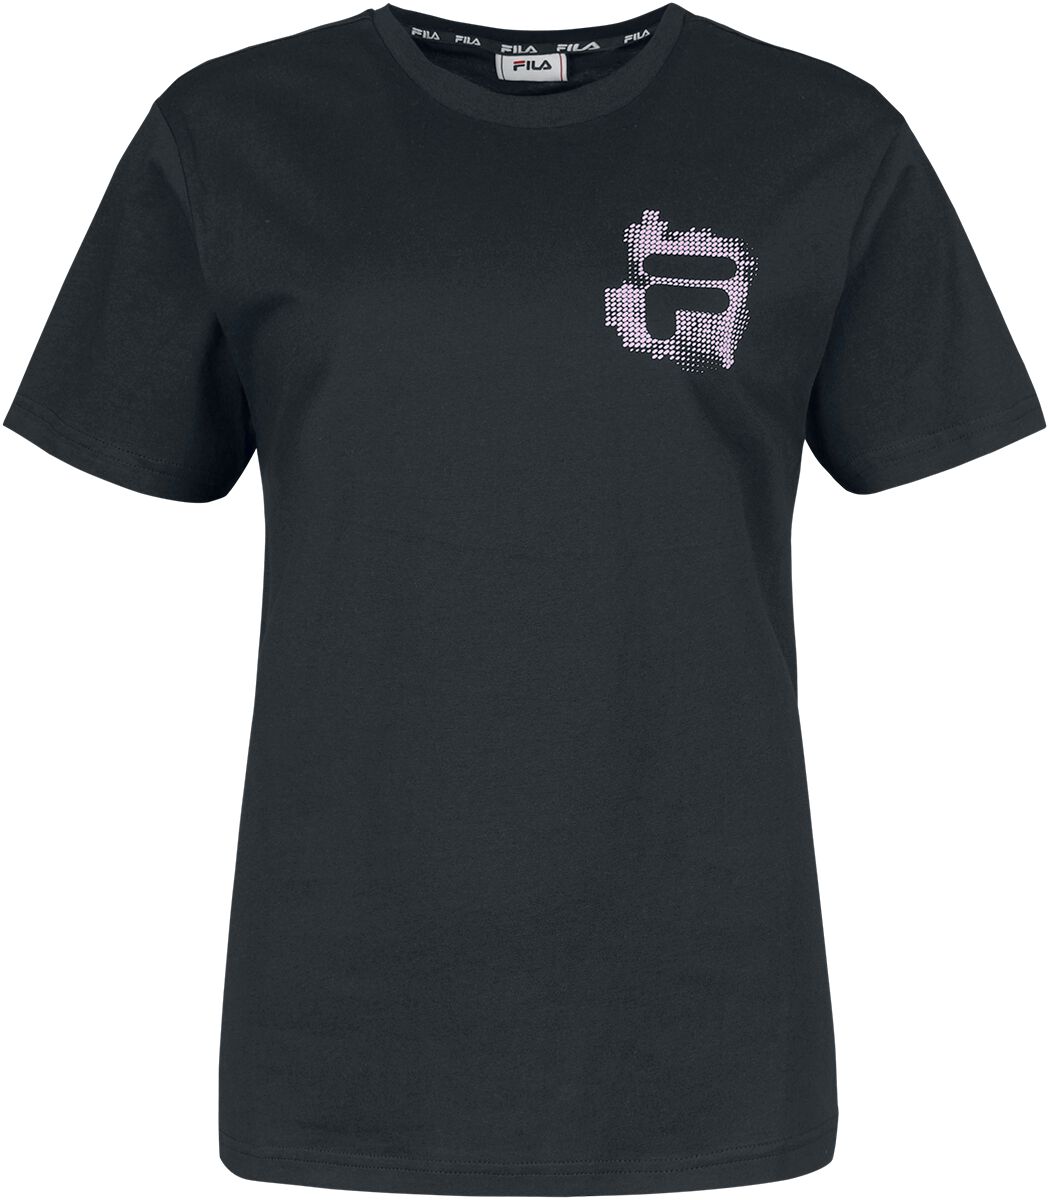 T-Shirt Manches courtes de Fila - BOSAU regular graphic tee - XS à XL - pour Femme - noir